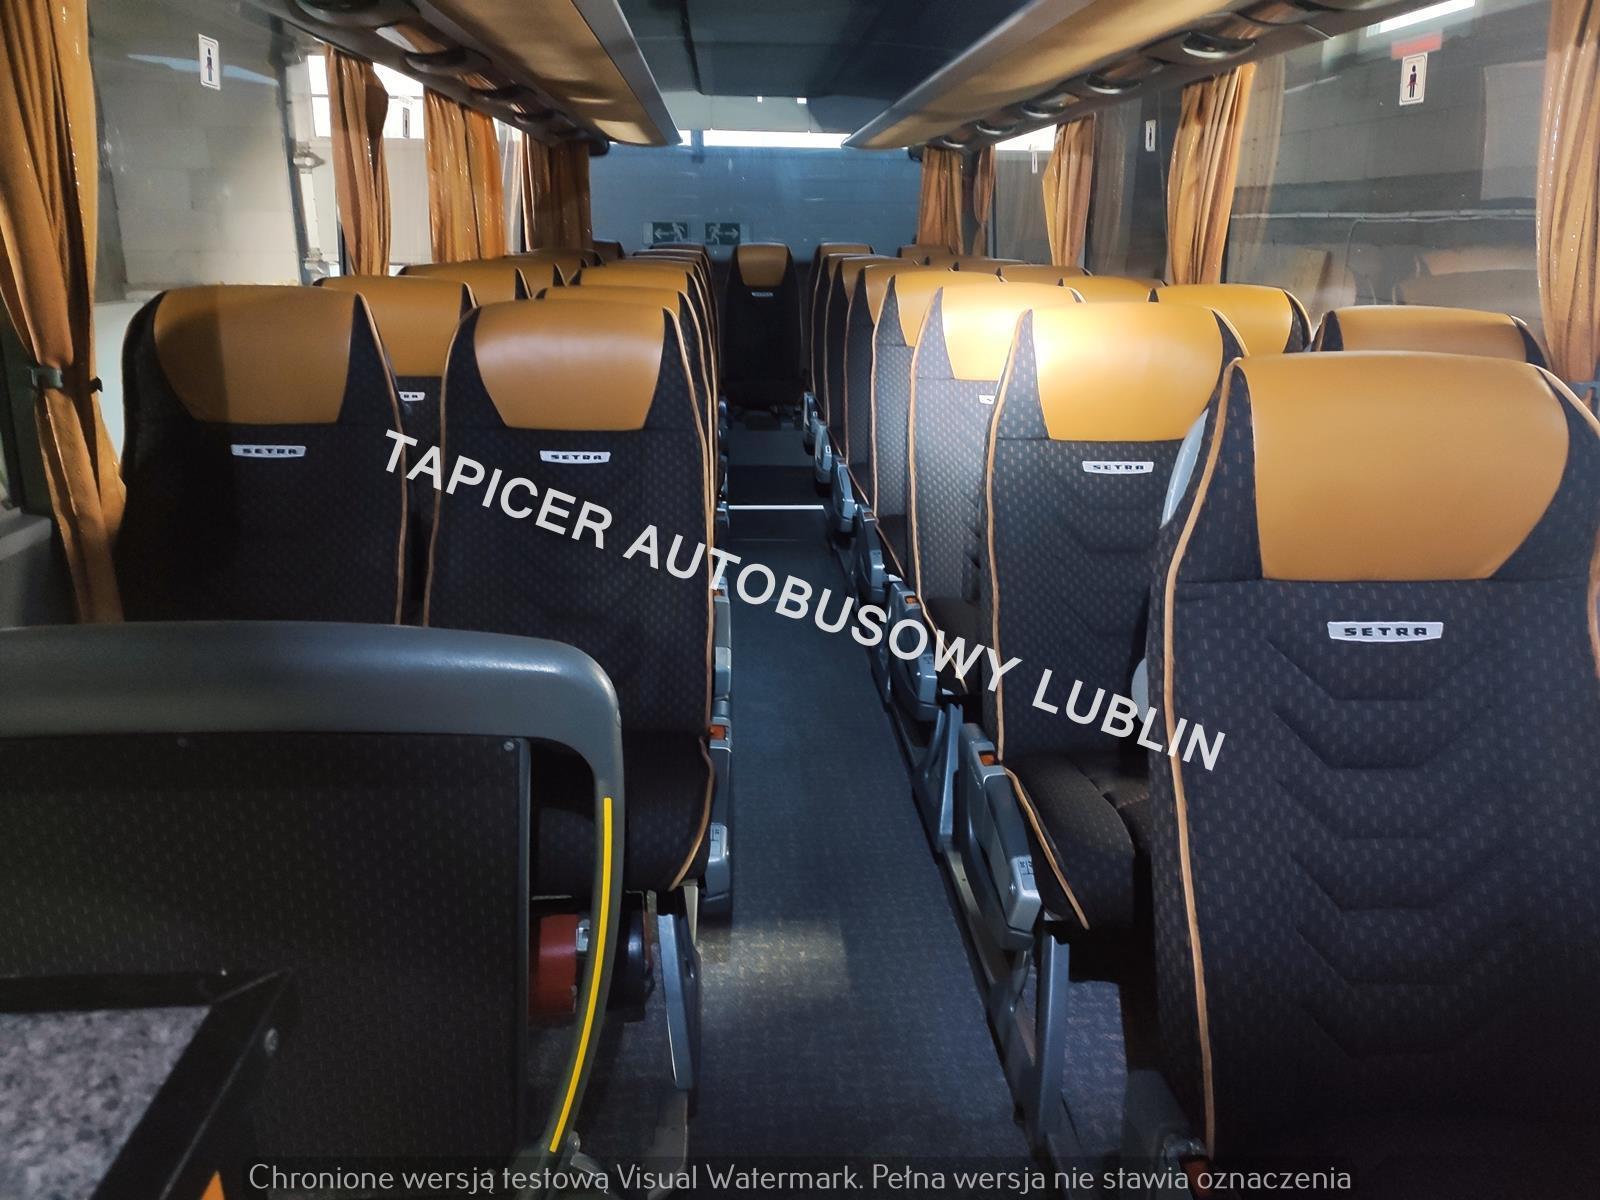 Tapicer autobusowy Lublin, tapicerka autobusowa Lublin, 